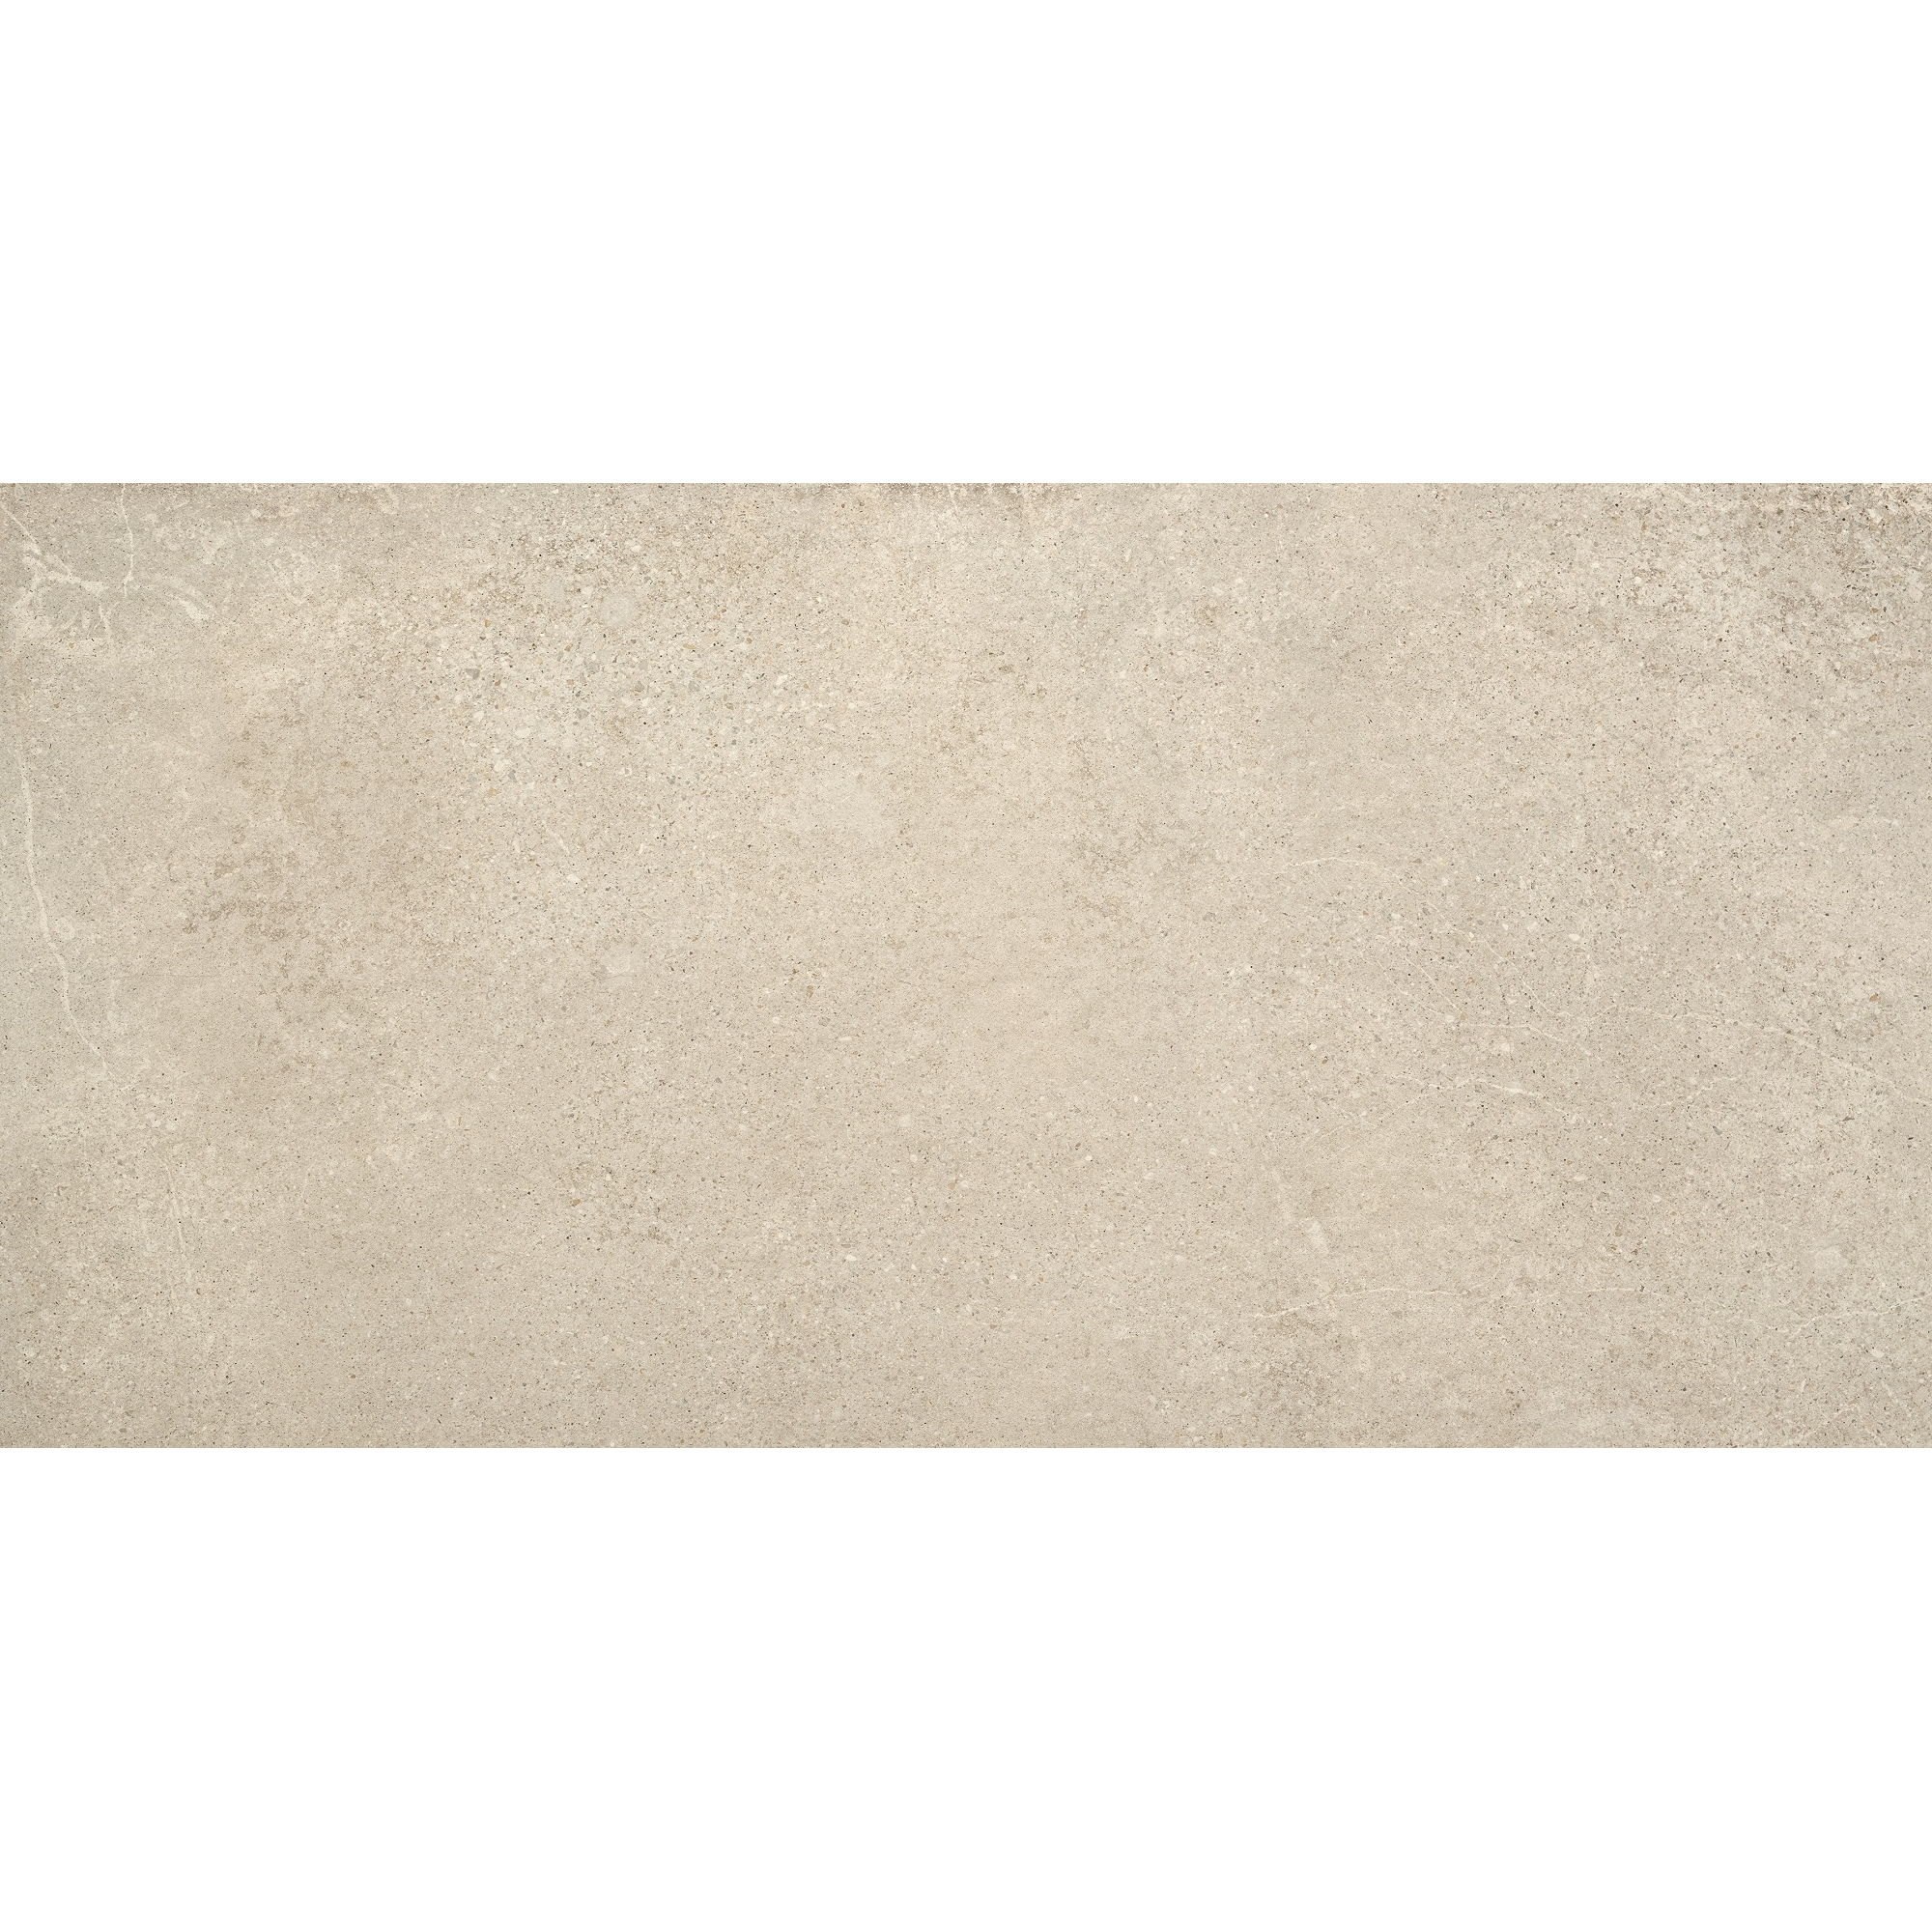 Bodenfliese 'Rockstone' Feinsteinzeug beige 60 x 120 cm + product picture